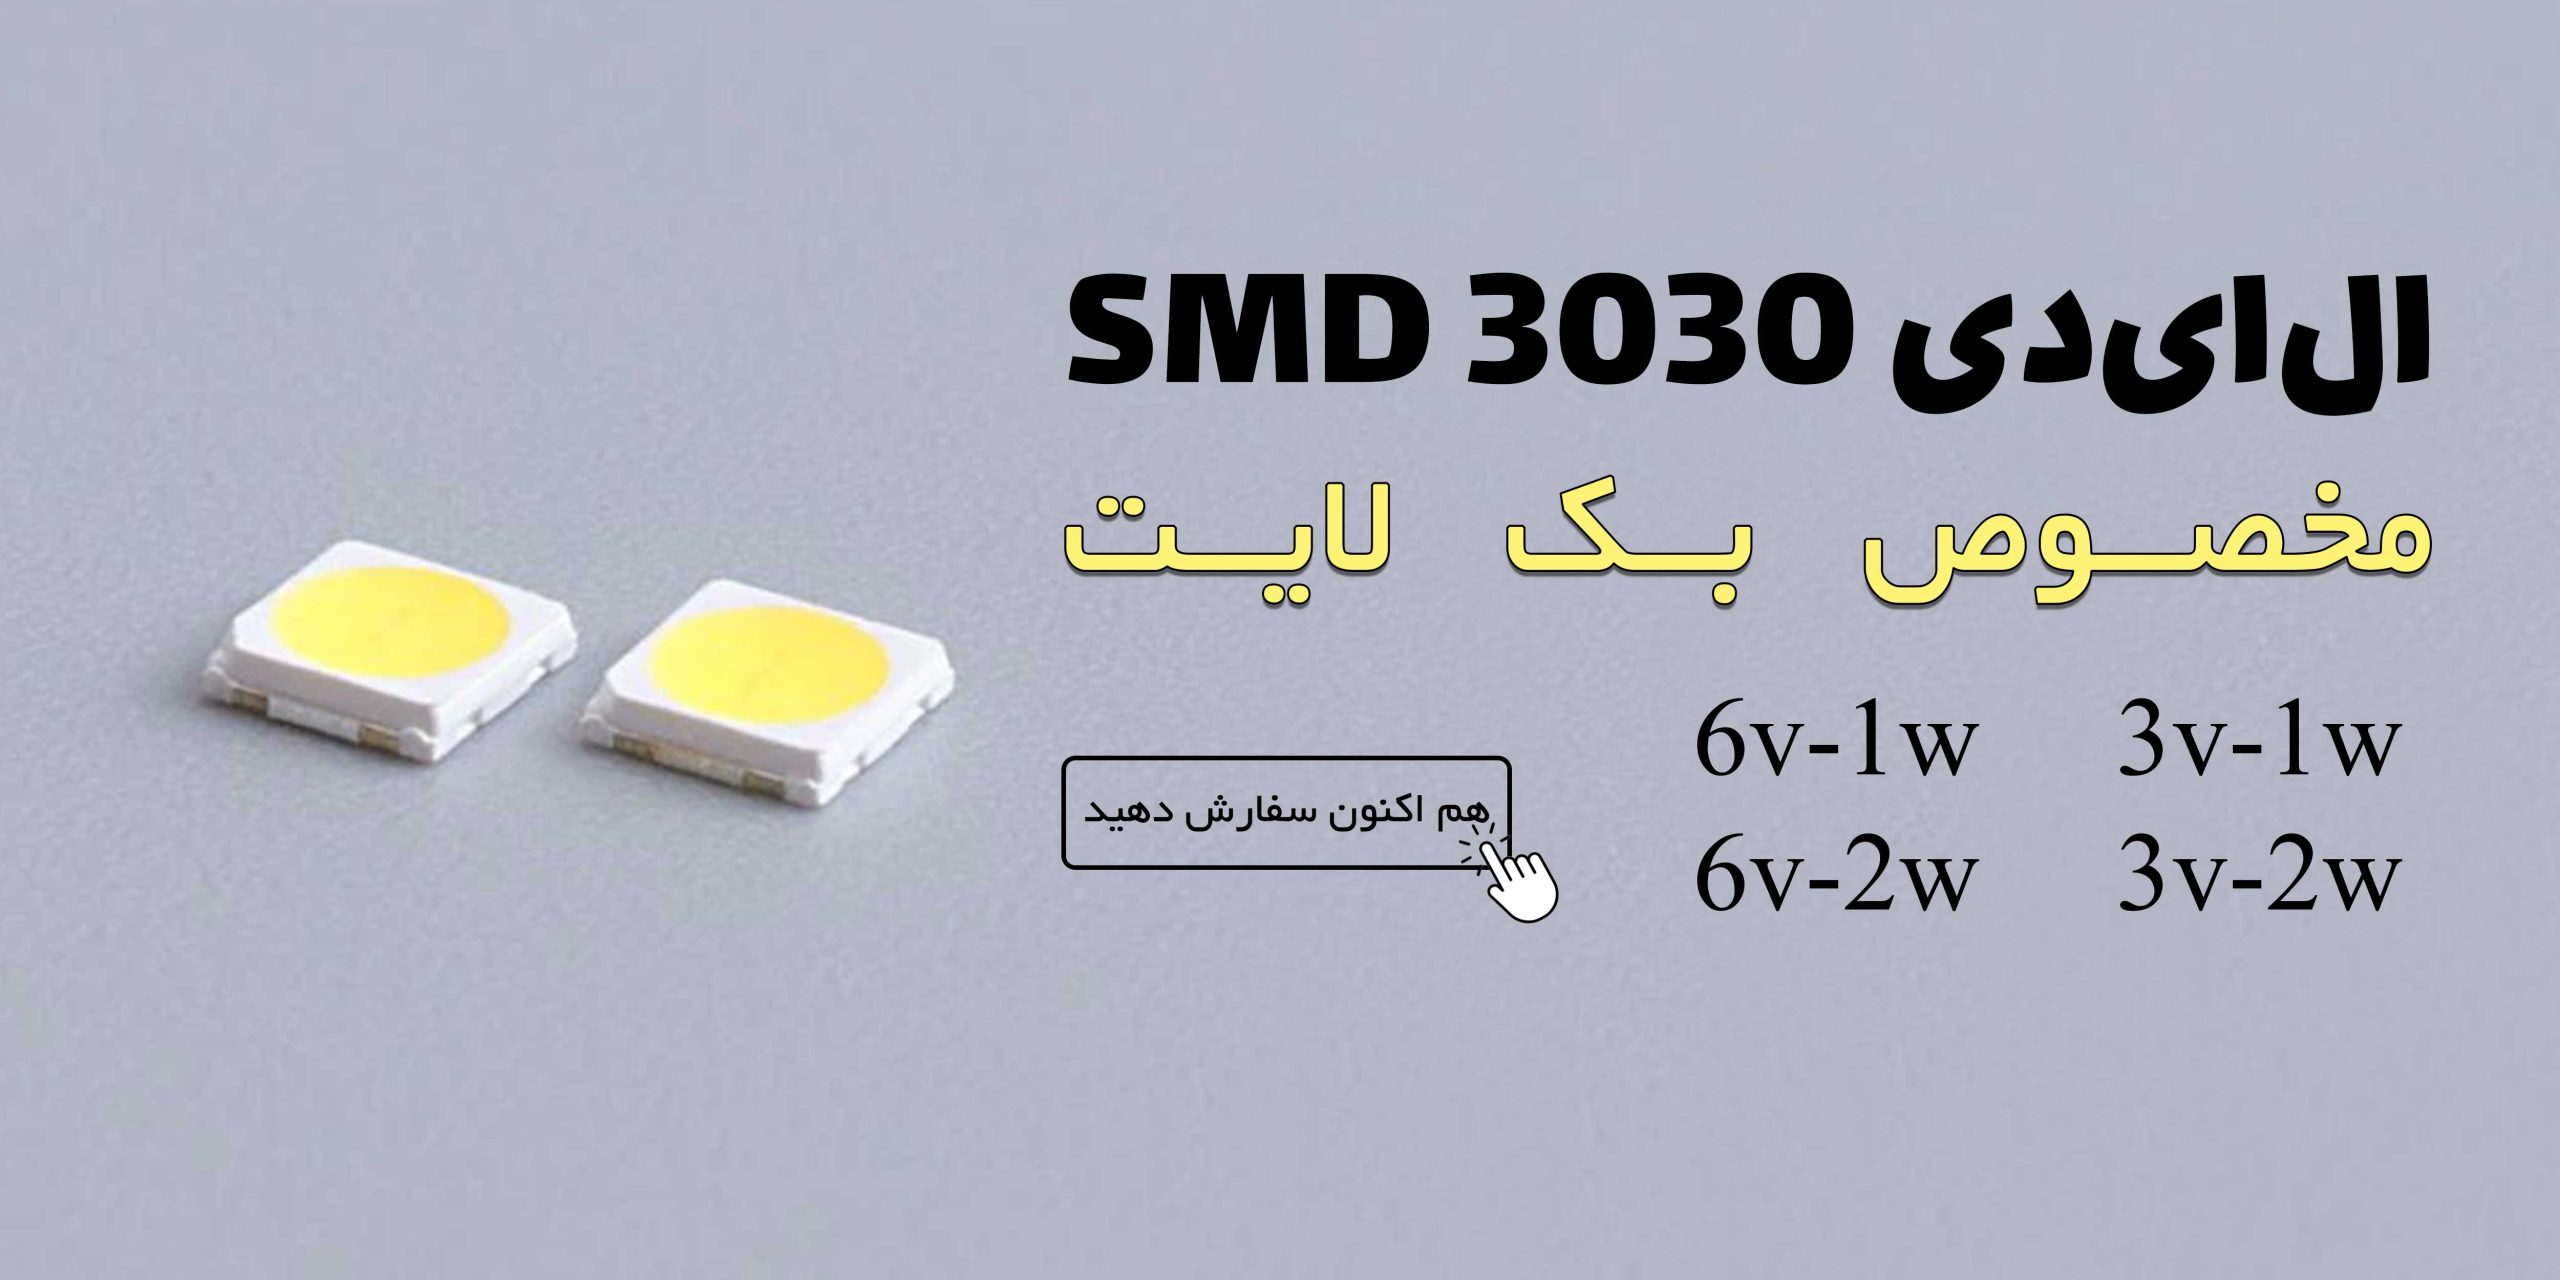 LED SMD 3030